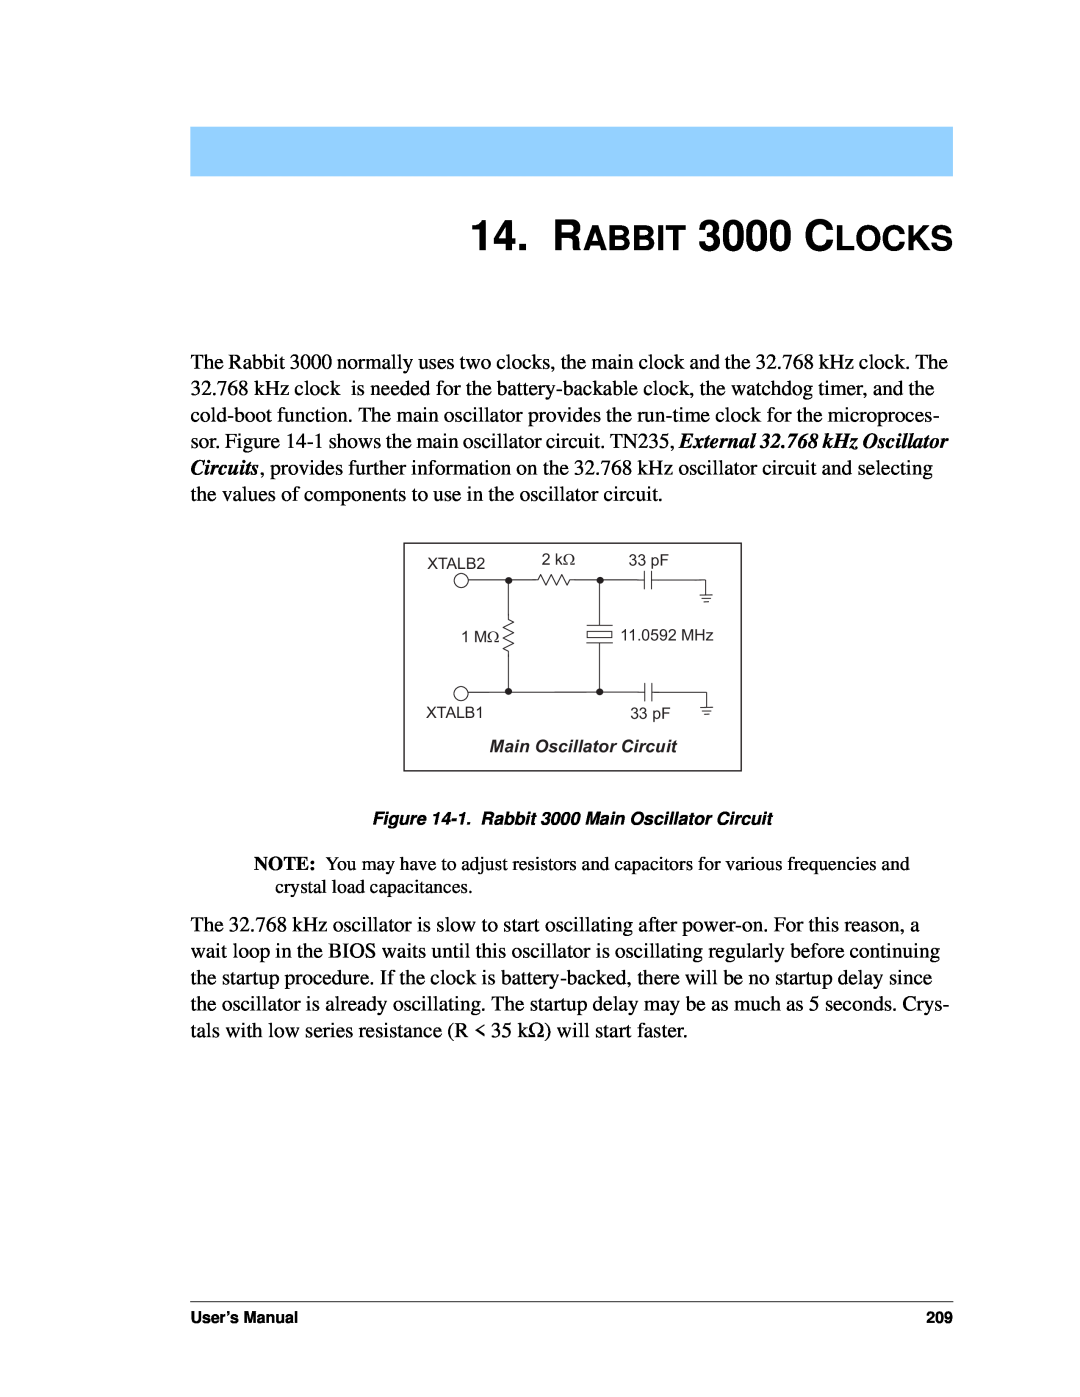 Jameco Electronics 2000 manual RABBIT 3000 CLOCKS, 1.Rabbit 3000 Main Oscillator Circuit 